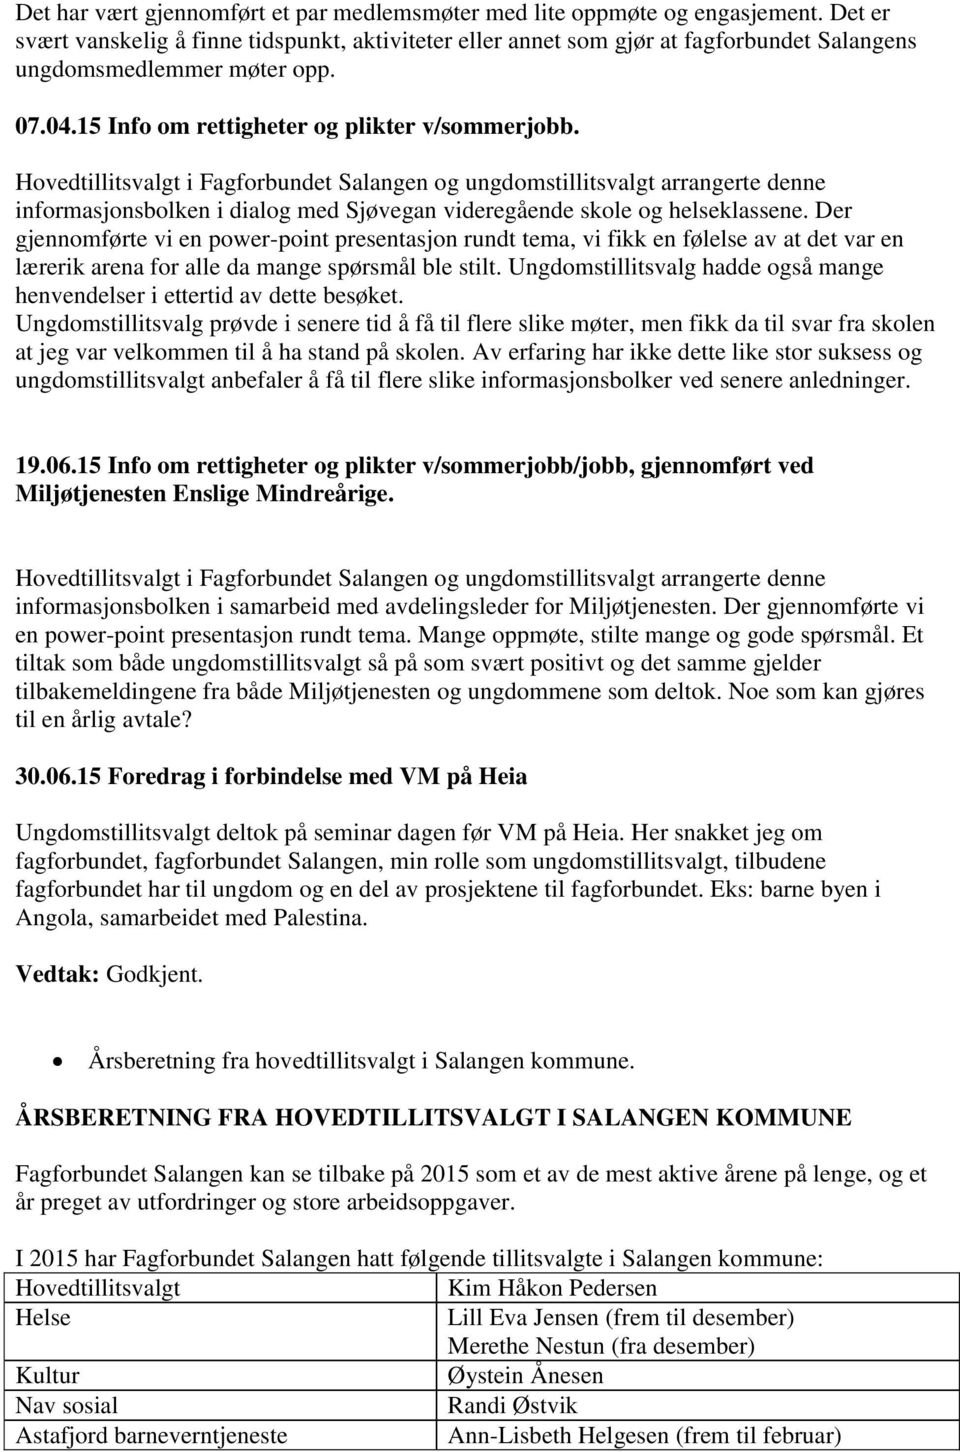 Hovedtillitsvalgt i Fagforbundet Salangen og ungdomstillitsvalgt arrangerte denne informasjonsbolken i dialog med Sjøvegan videregående skole og helseklassene.